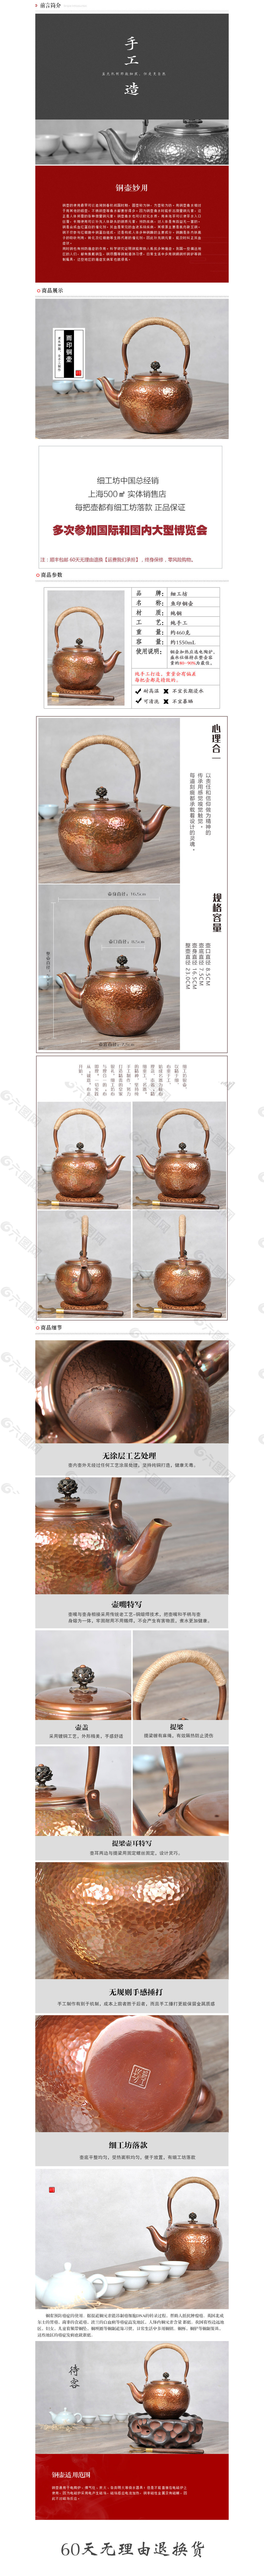 铜壶详情页 茶壶 茶具铜壶通用 日本茶壶